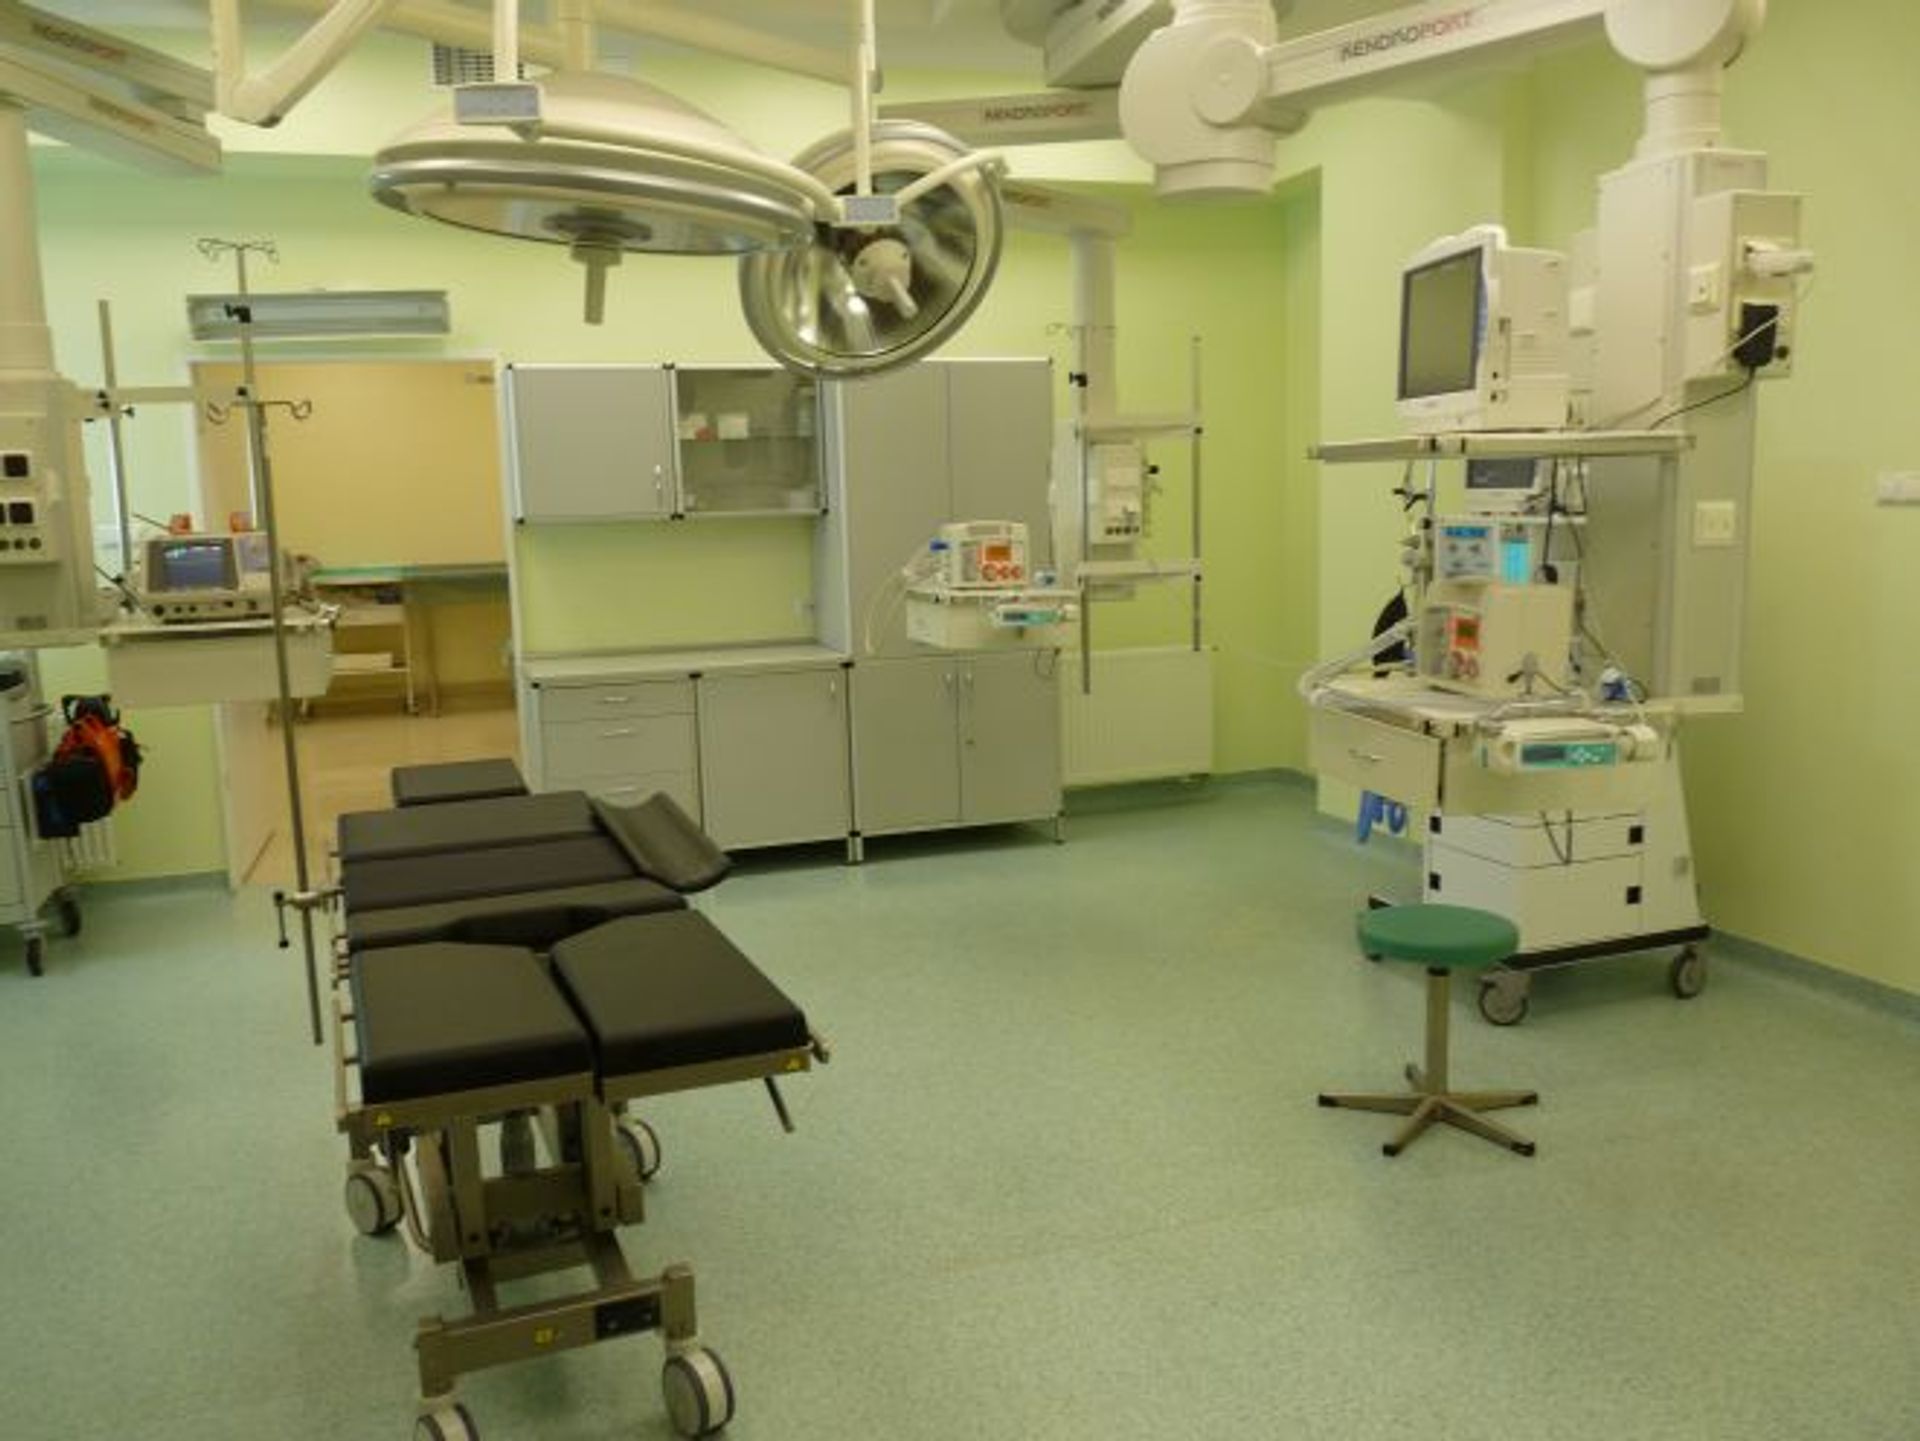  Rok 2012 pod znakiem inwestycji w szpitalu na Koszarowej